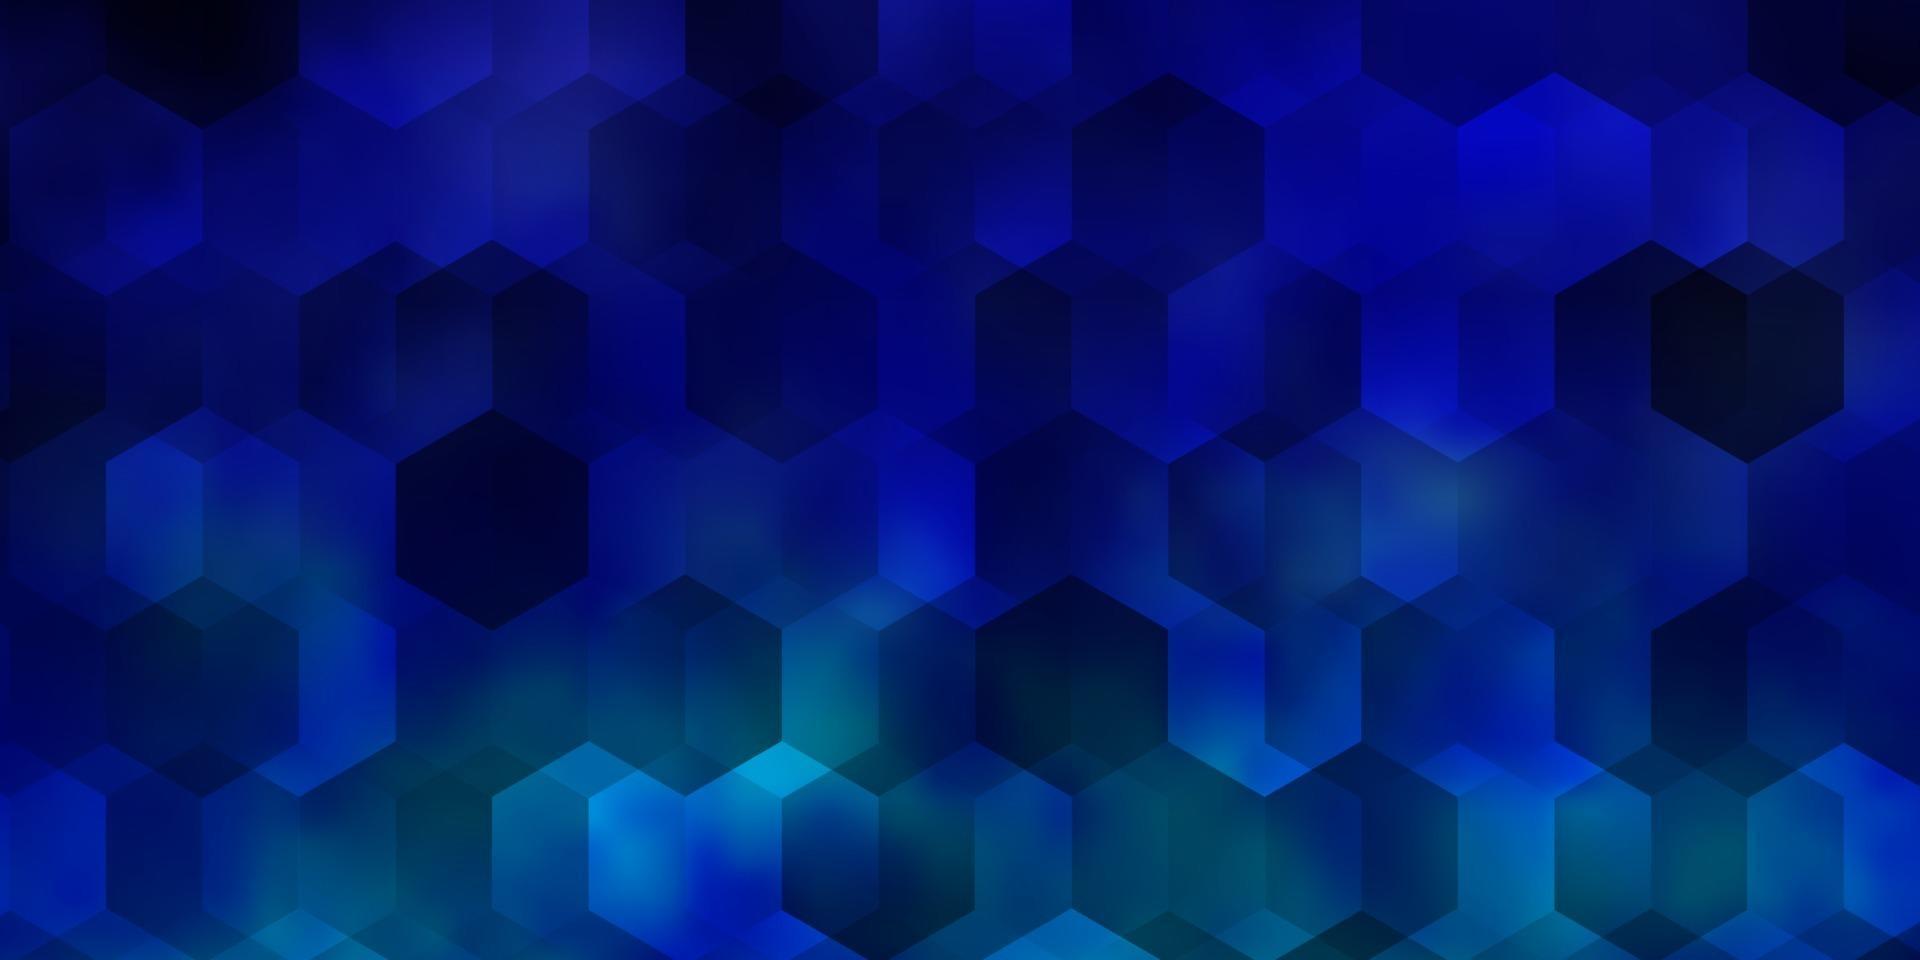 Telón de fondo de vector azul claro con hexágonos.